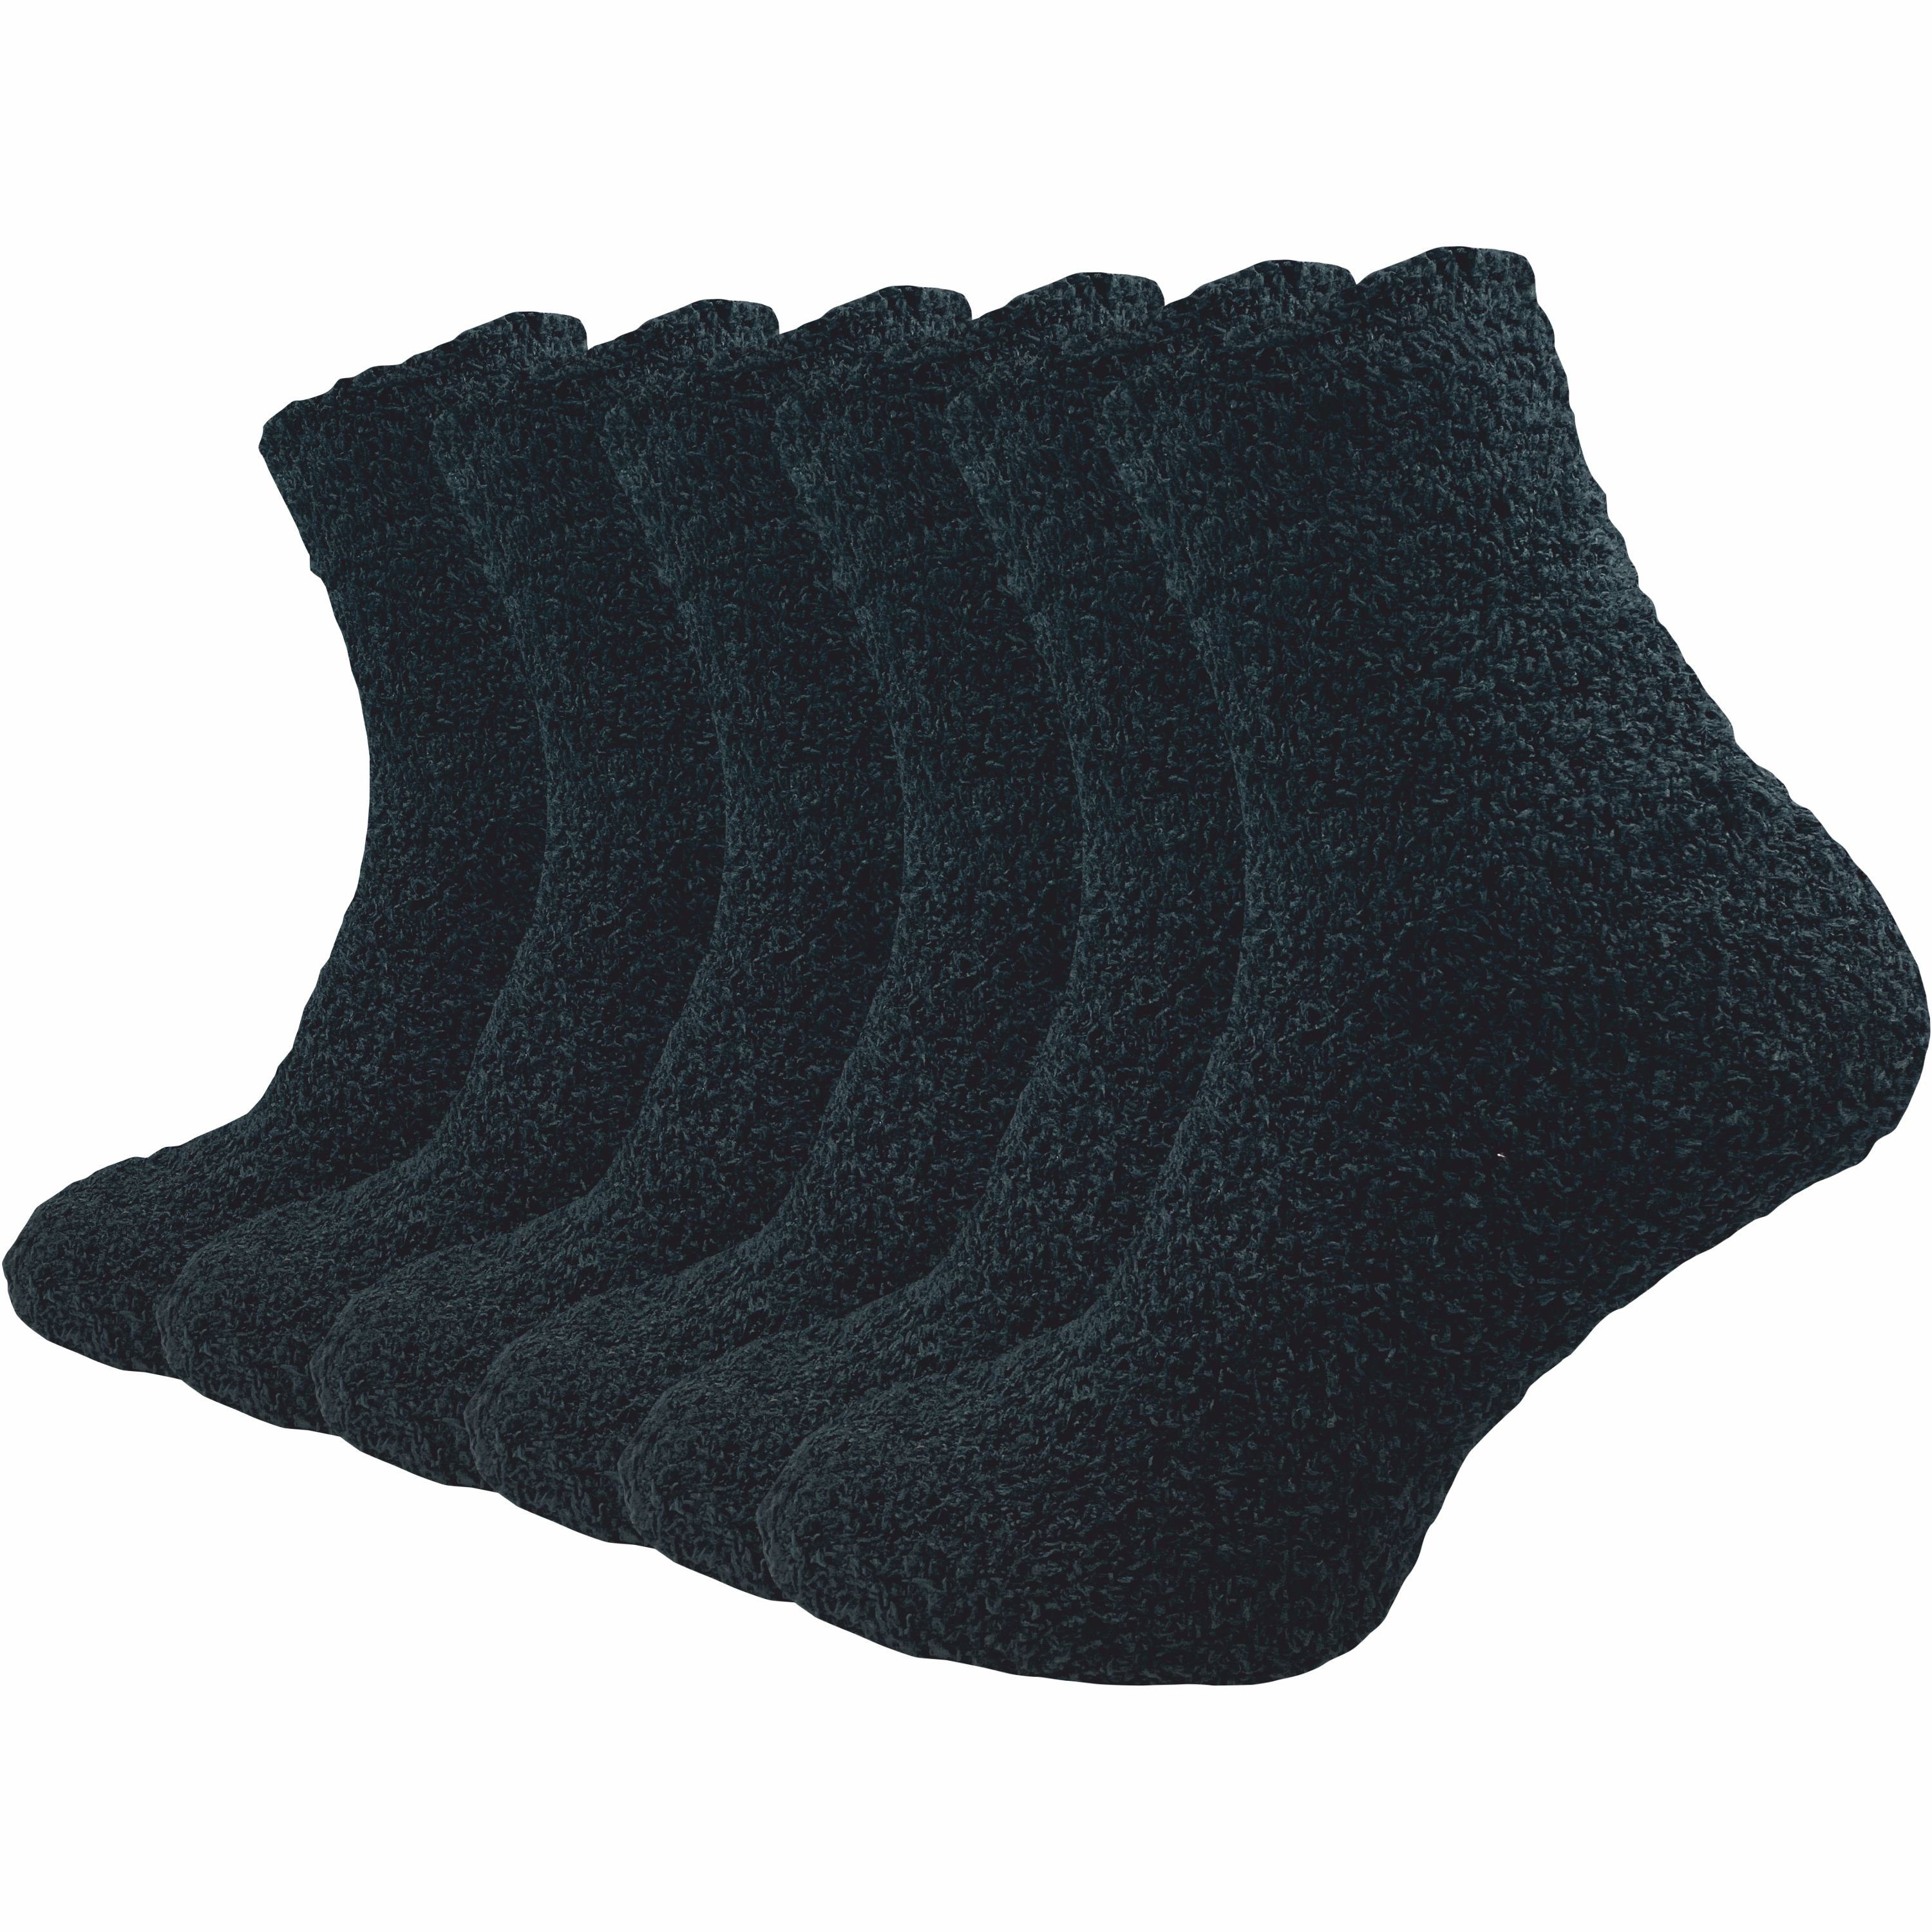 GAWILO Kuschelsocken für Damen für warme Füße an kalten Tagen - extra weich & flauschig (6 Paar) Haussocken aus flauschigem Material für optimalen Tragekomfort schwarz